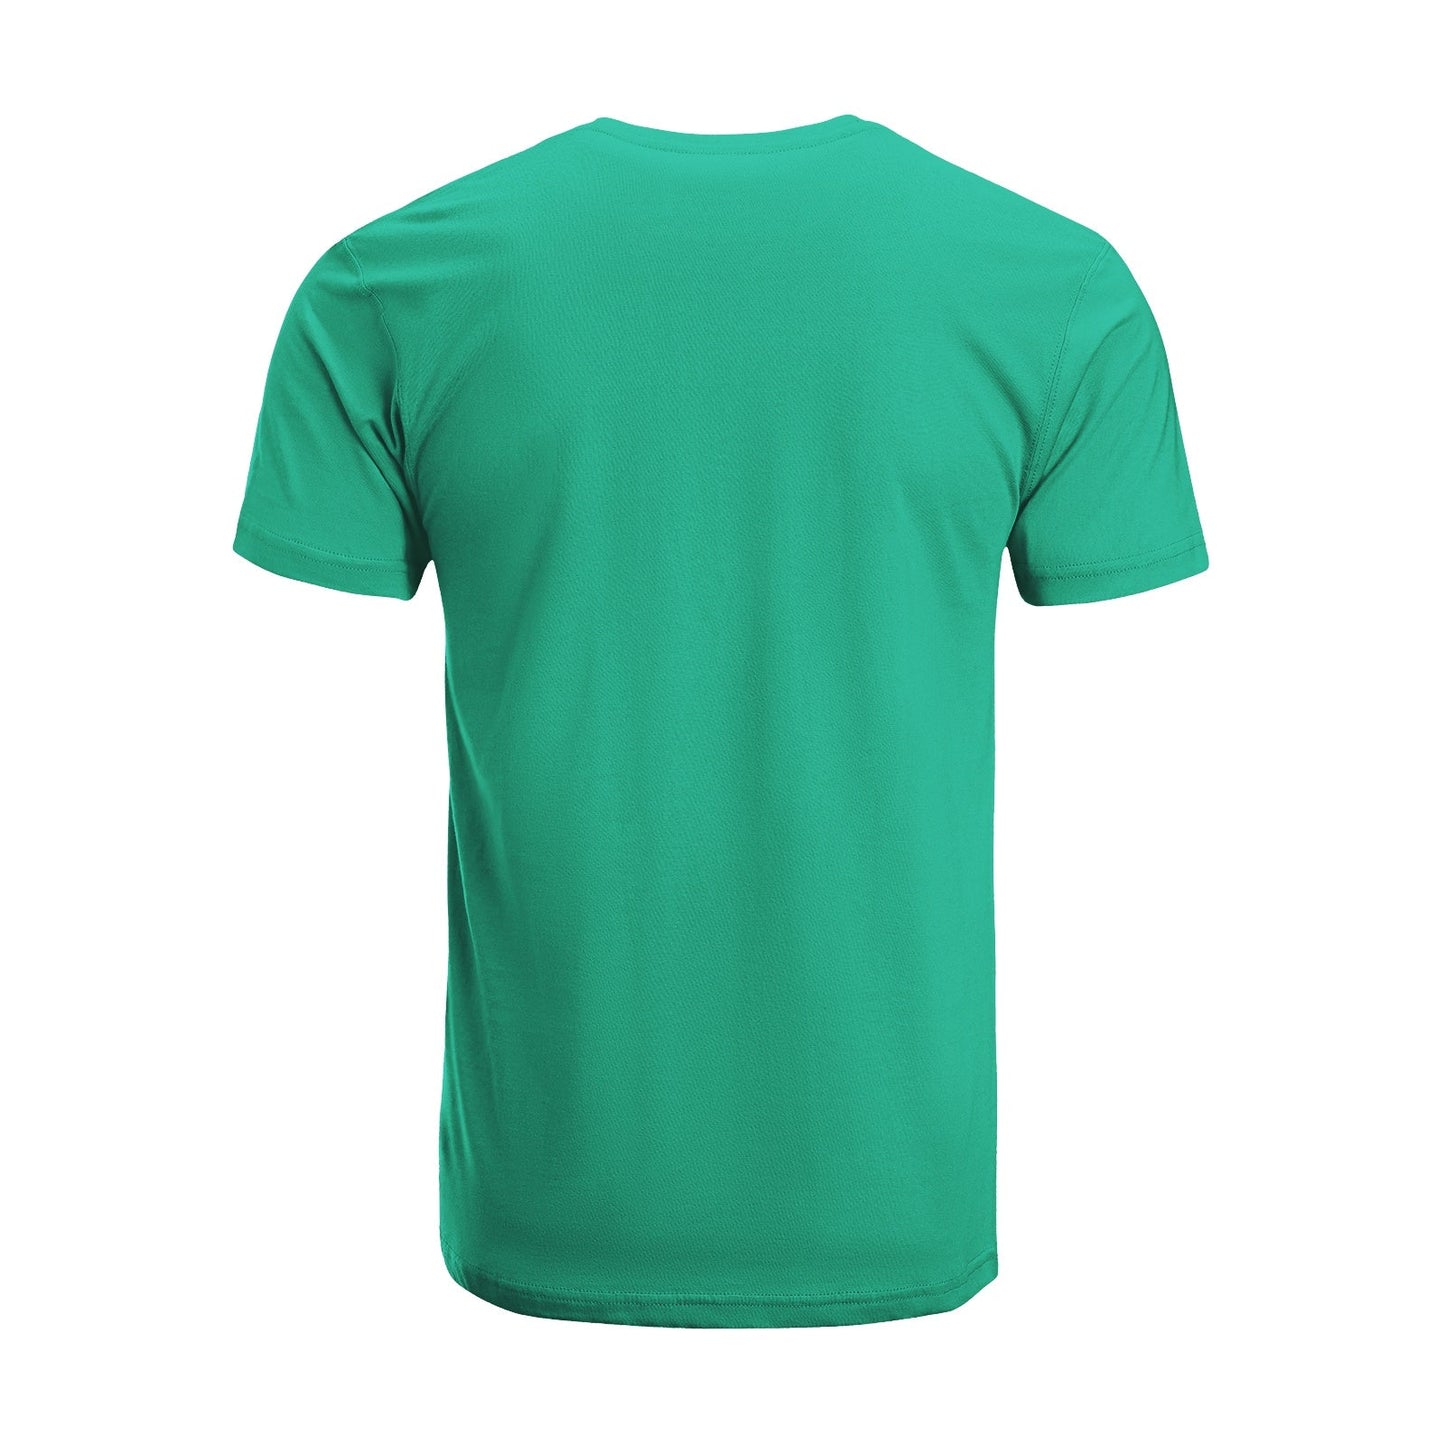 Unisex Short Sleeve Crew Neck Cotton Jersey T-Shirt TRUCK 24